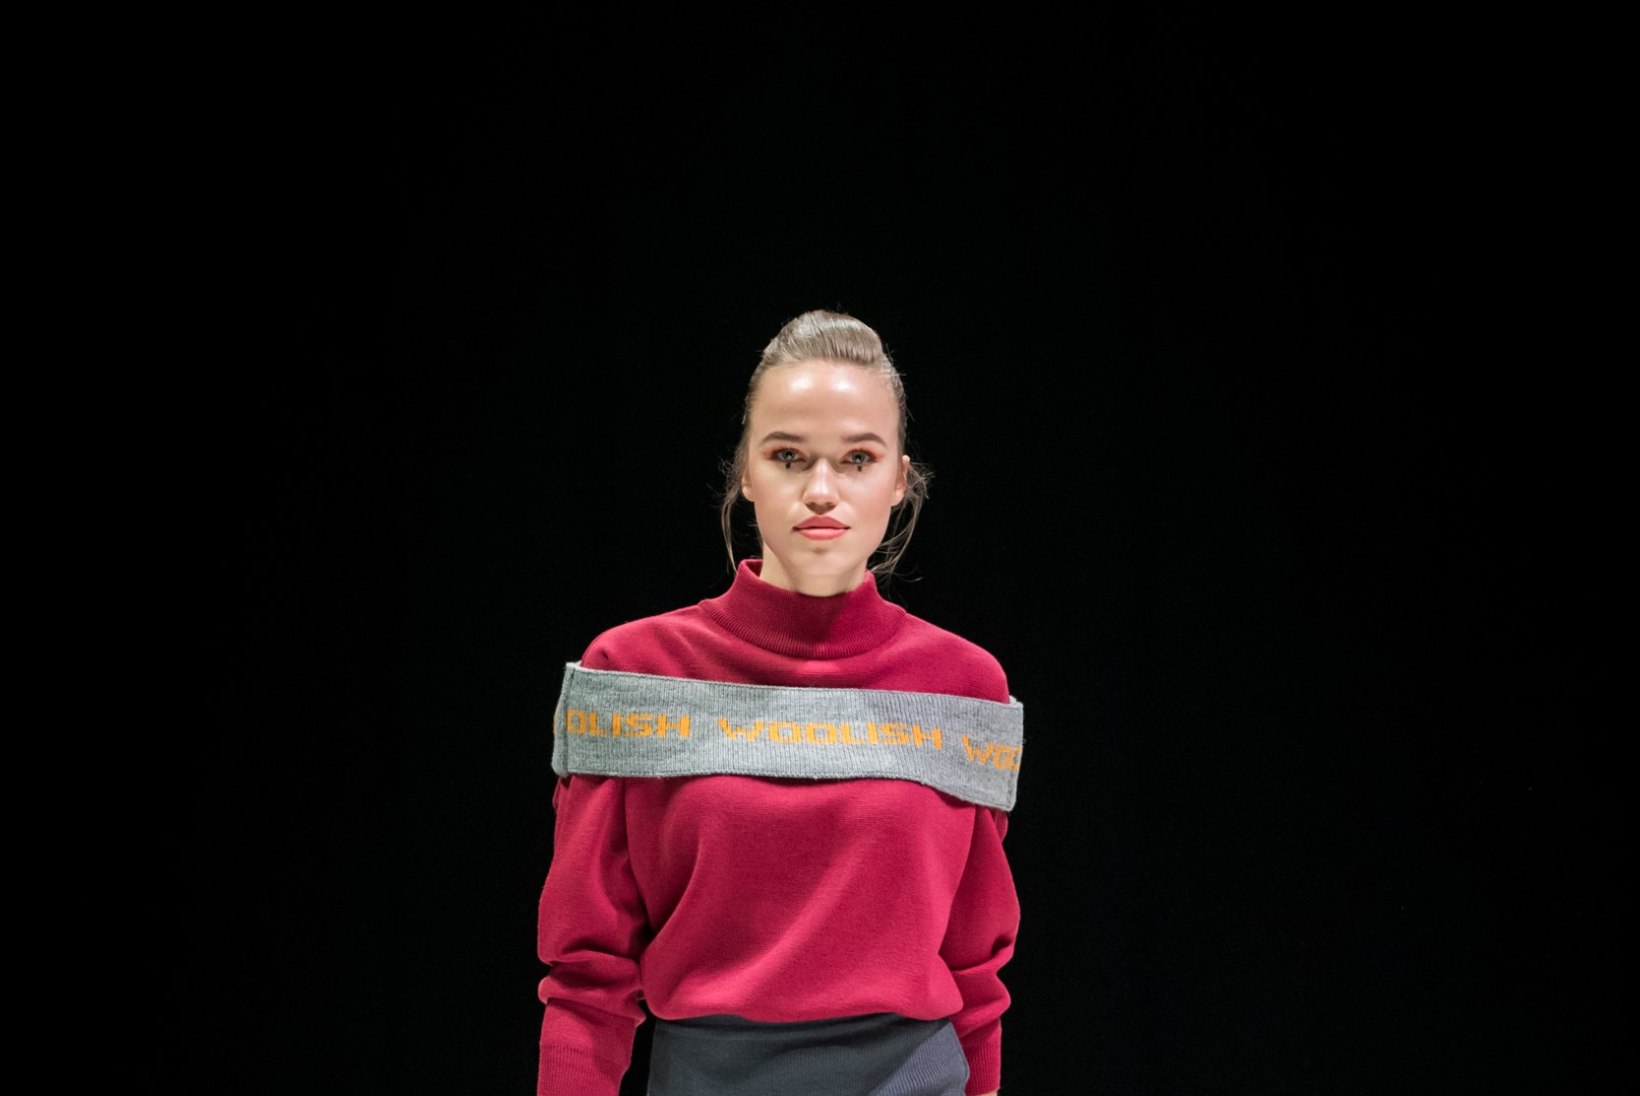 TFW 2019 | Woolish tõi publiku ette meriinovillaste kudumite pehme paituse ning modernselt trenditeadliku stilistika